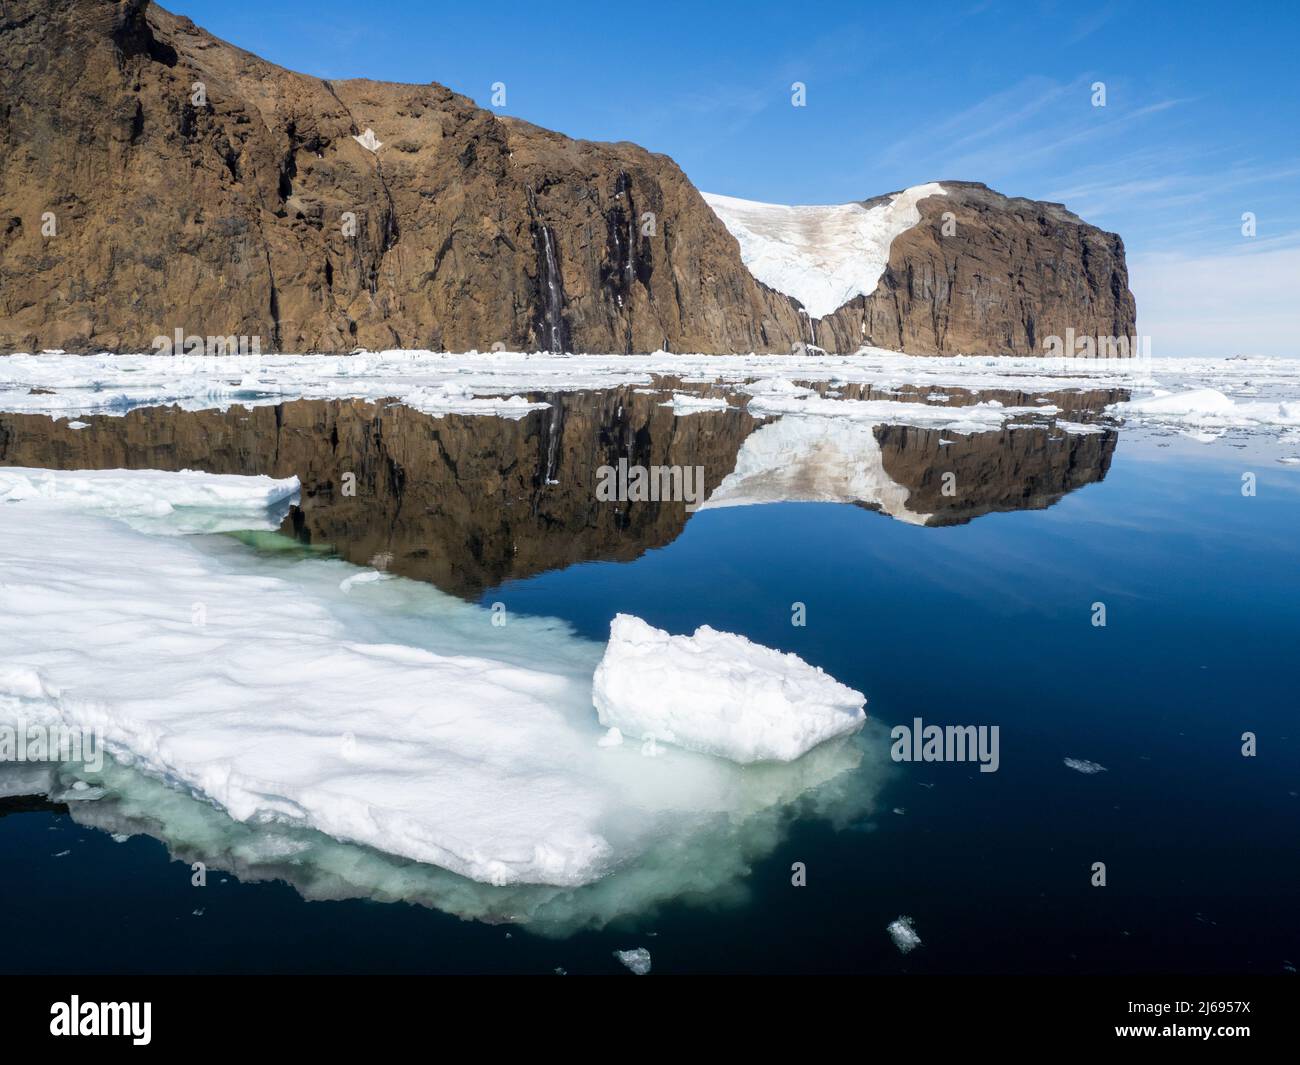 La glace étouffe les eaux entourant l'île Lockyer, la mer de Weddell, l'Antarctique et les régions polaires Banque D'Images